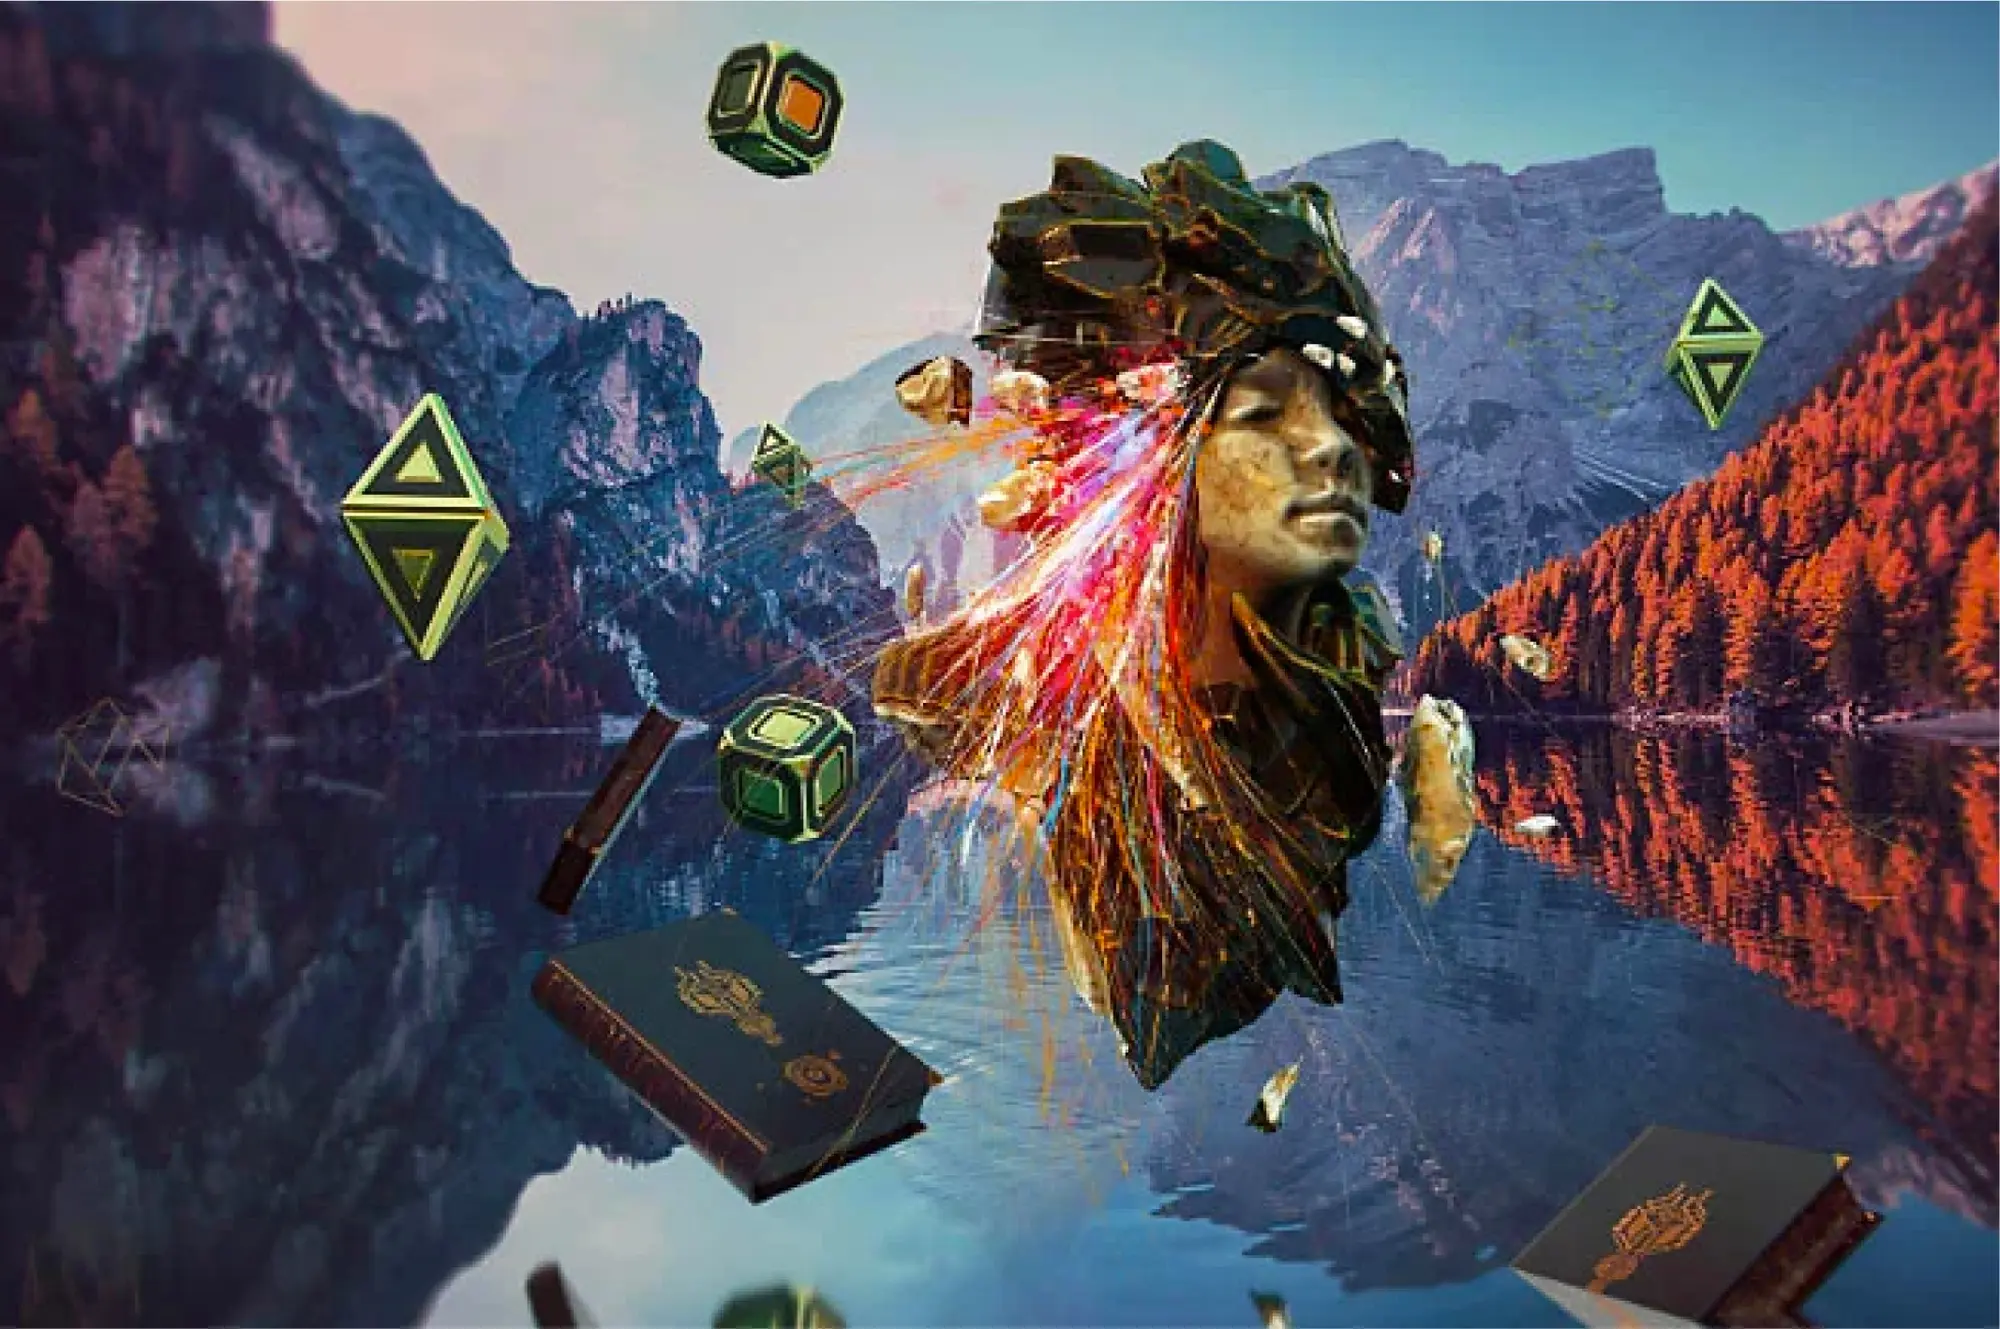 Imagem 3D com realidade virtual de uma cabeça flutuante sobre paisagem de montanhas e lago com livros e figuras flutuantes